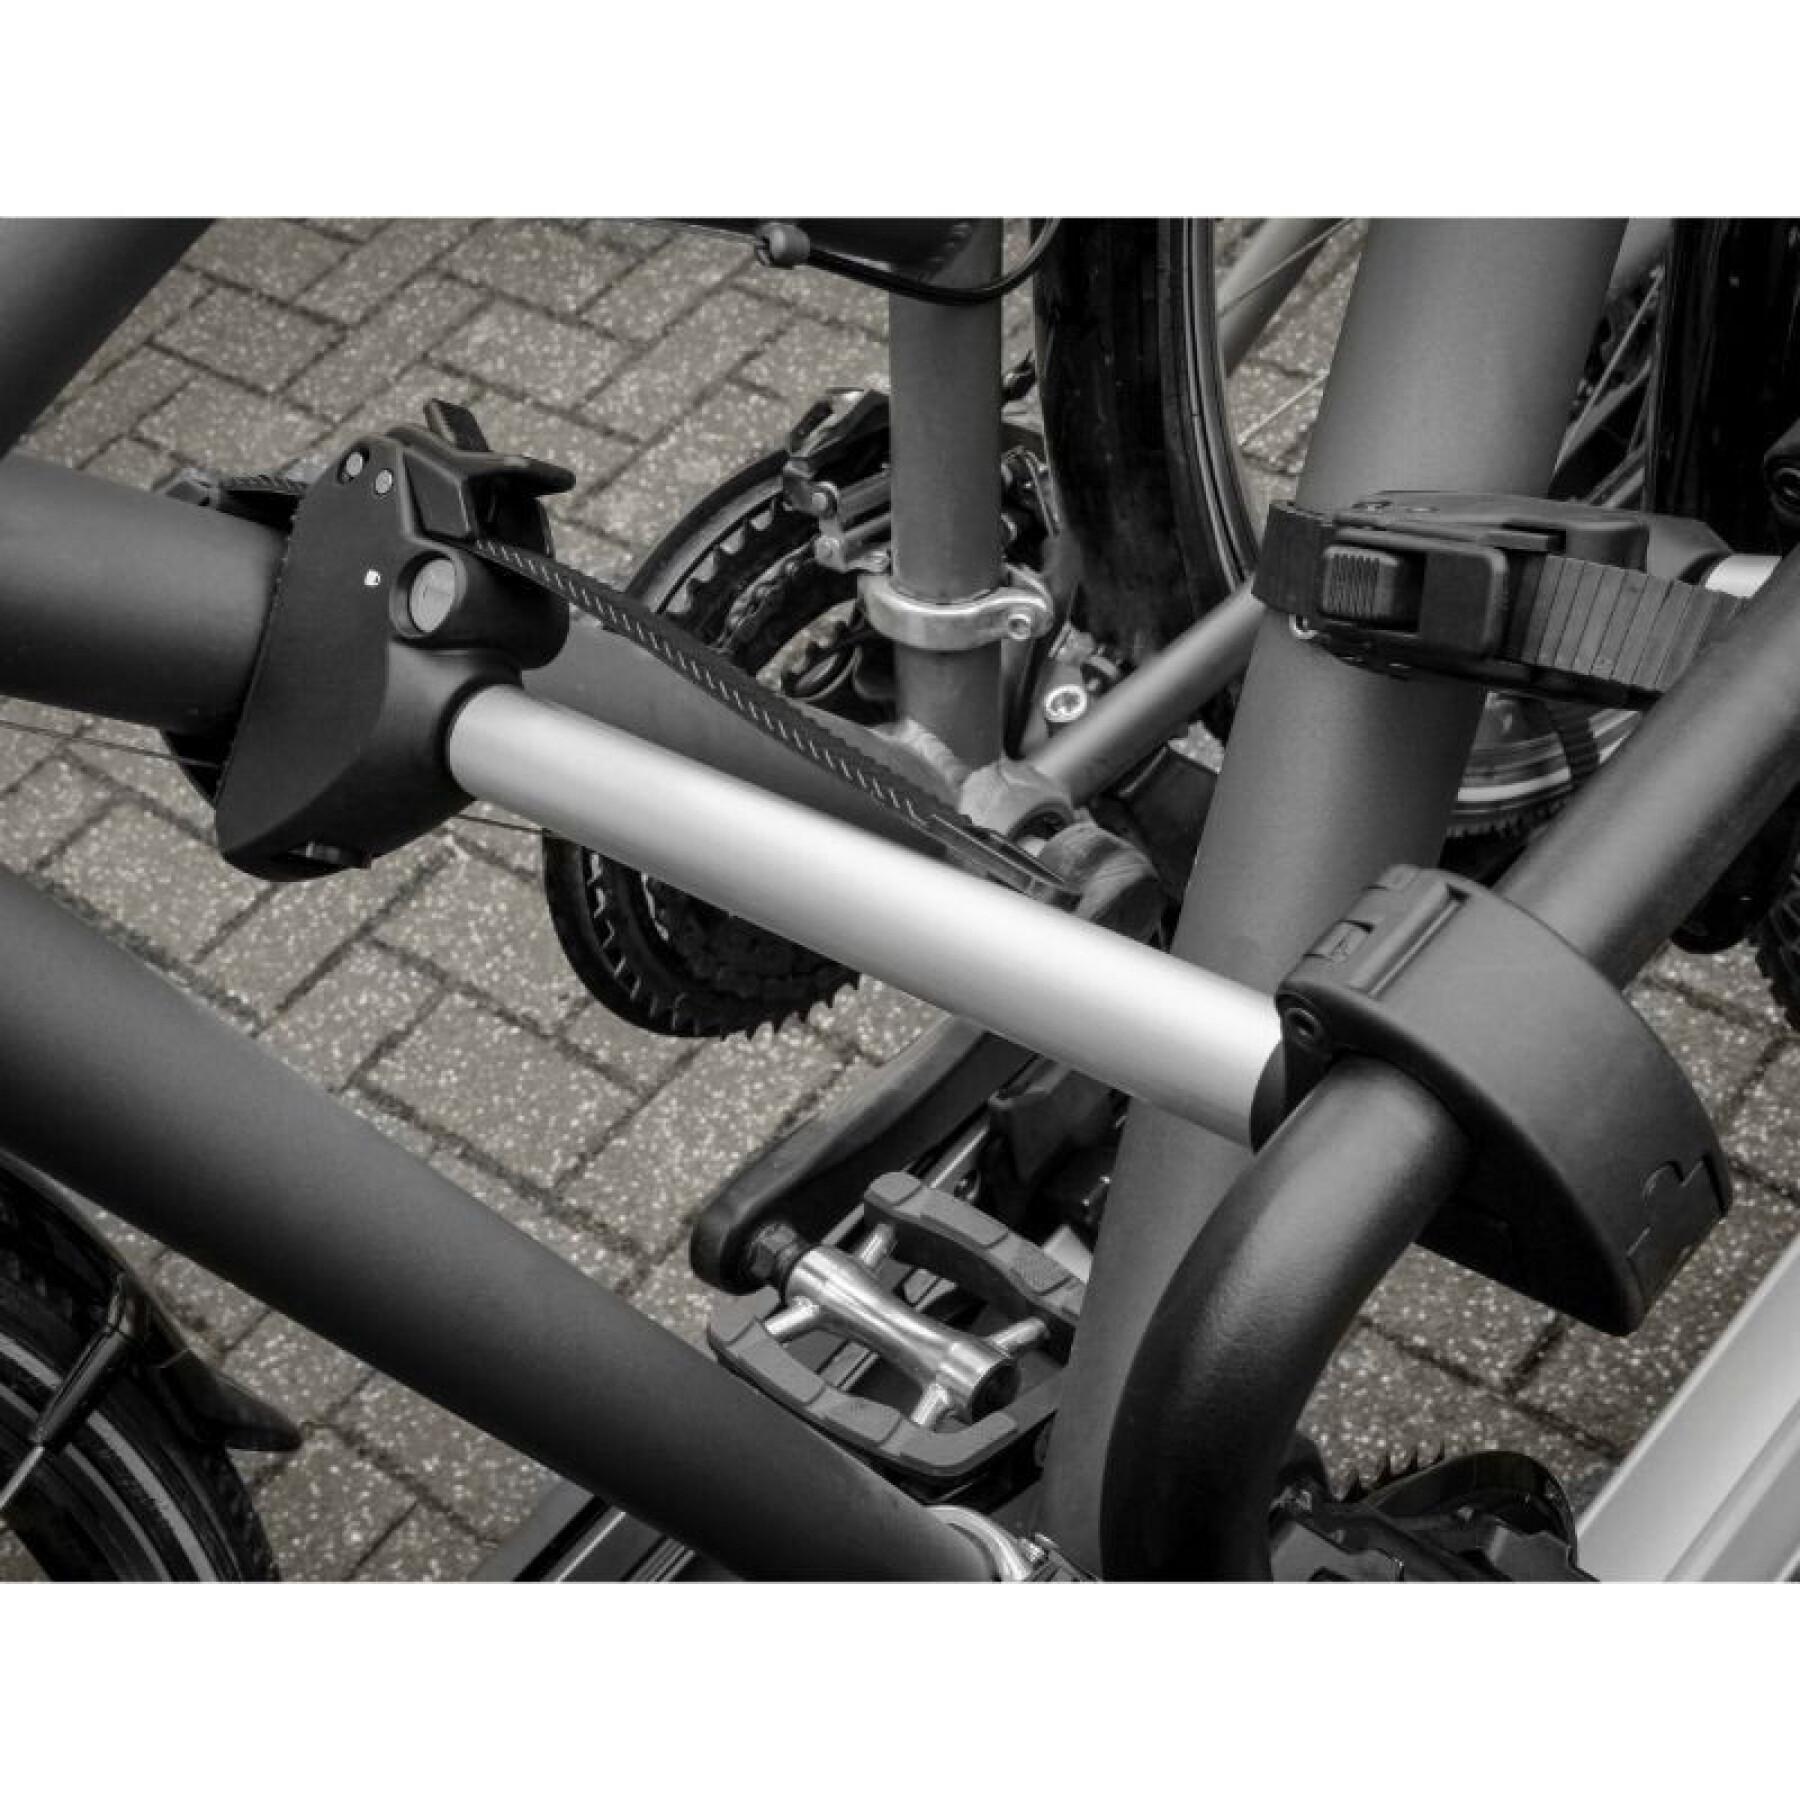 Bras fixe cadre pour porte-vélo plateforme avec antivol (arceau en U) pour crow basic-amber et autres marques Peruzzo 32 cm